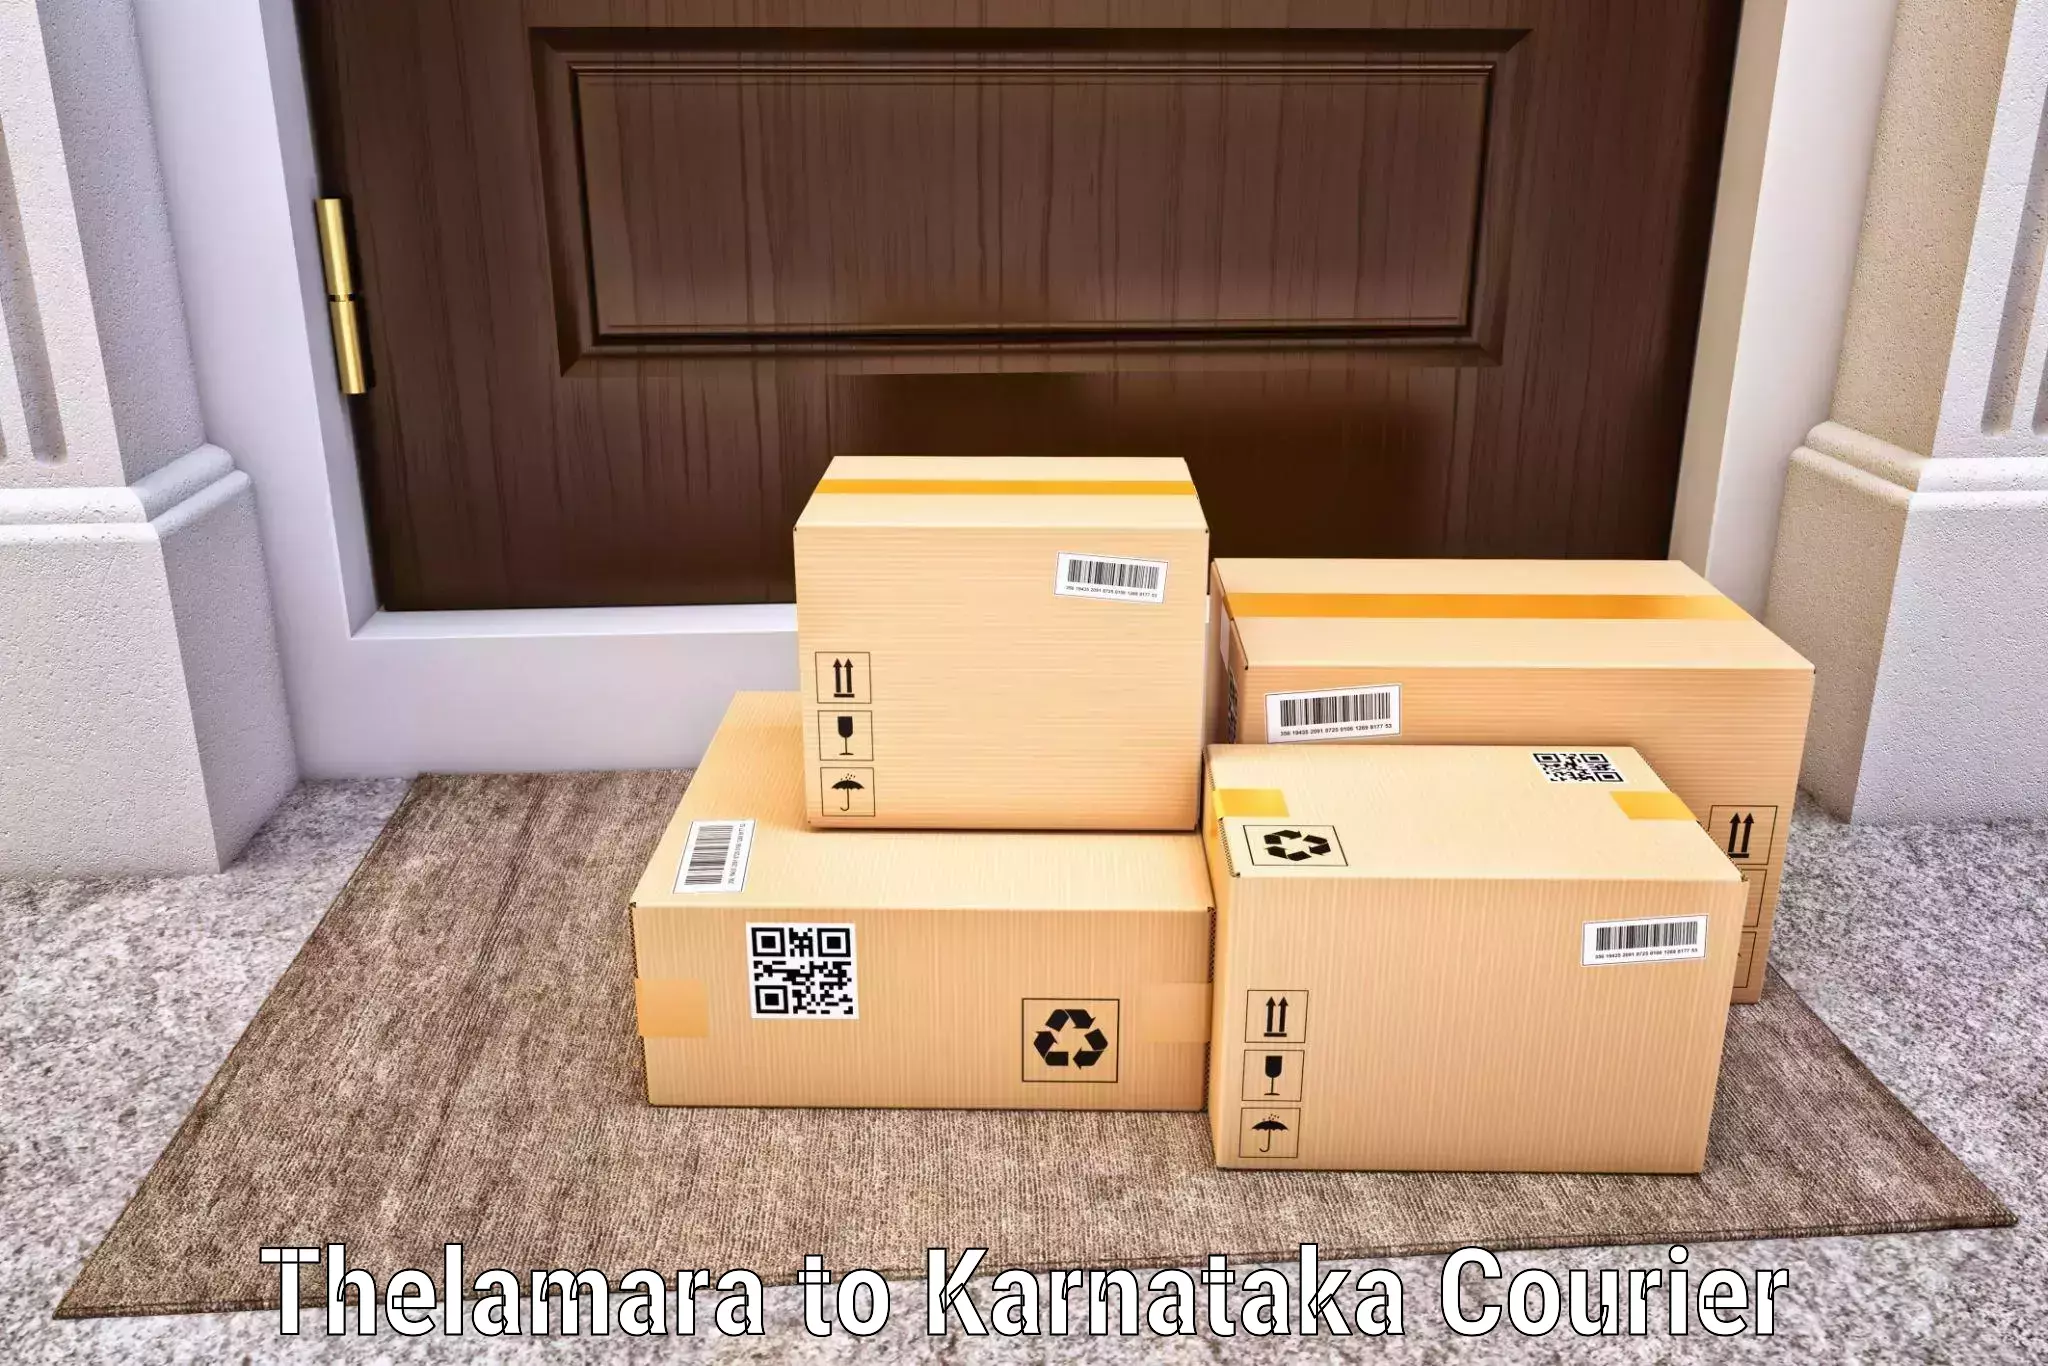 Package consolidation in Thelamara to Karnataka